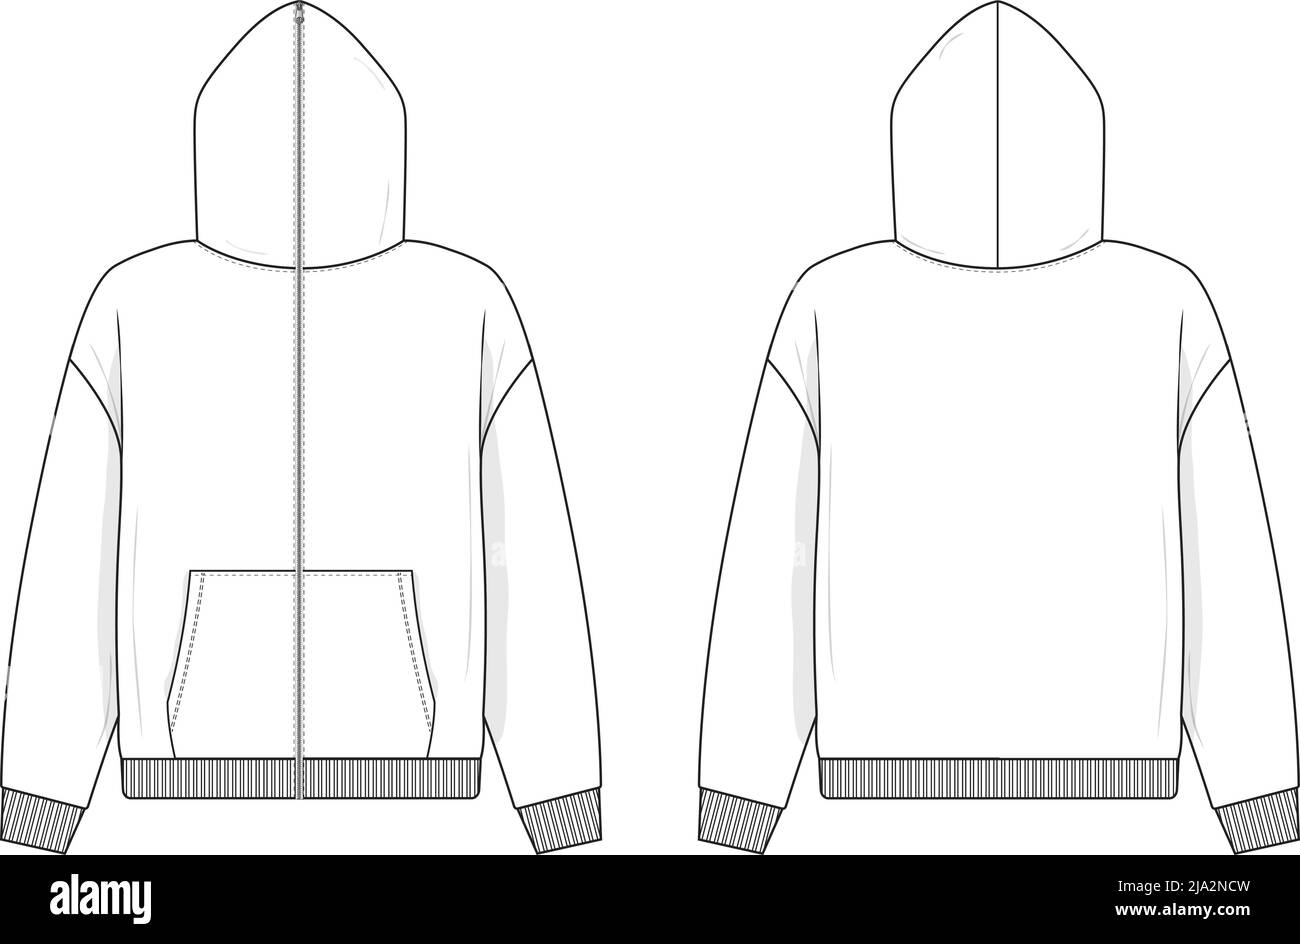 Full Zip Hoodie Sweatshirt flach technische Zeichnung Illustration Mock-up Vorlage für Design und Tech Packs Männer oder Unisex Mode CAD Streetwear. Stock Vektor